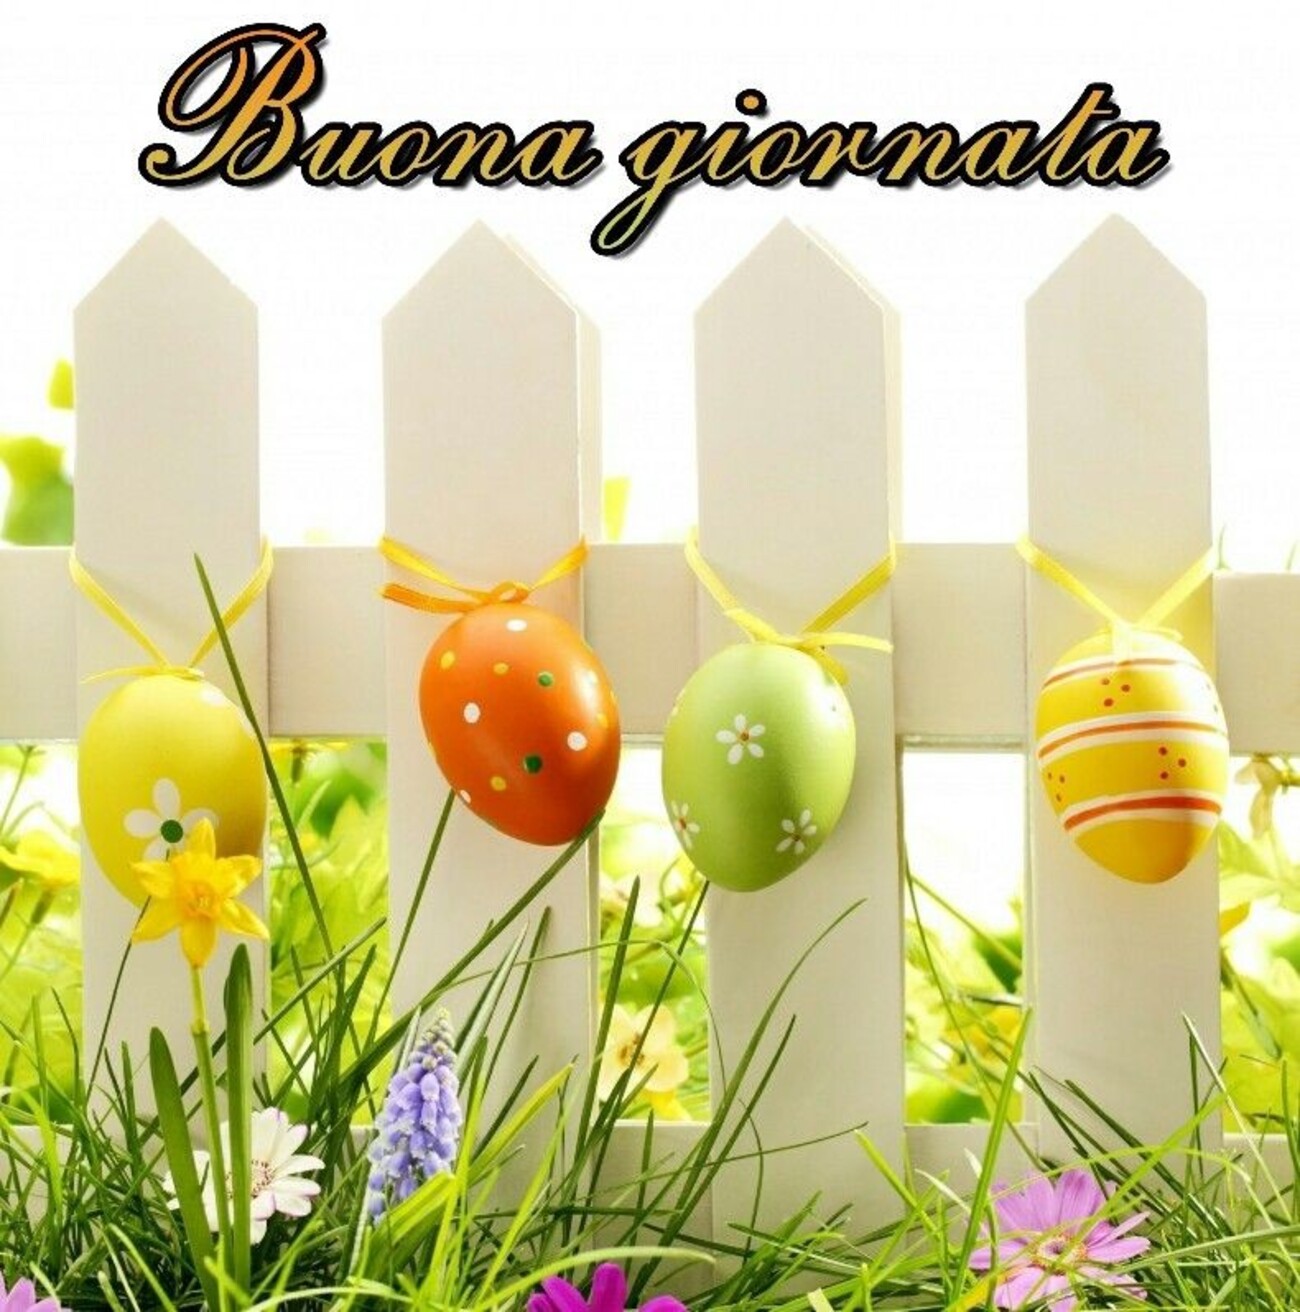 Buona Giornata a tema Pasqua